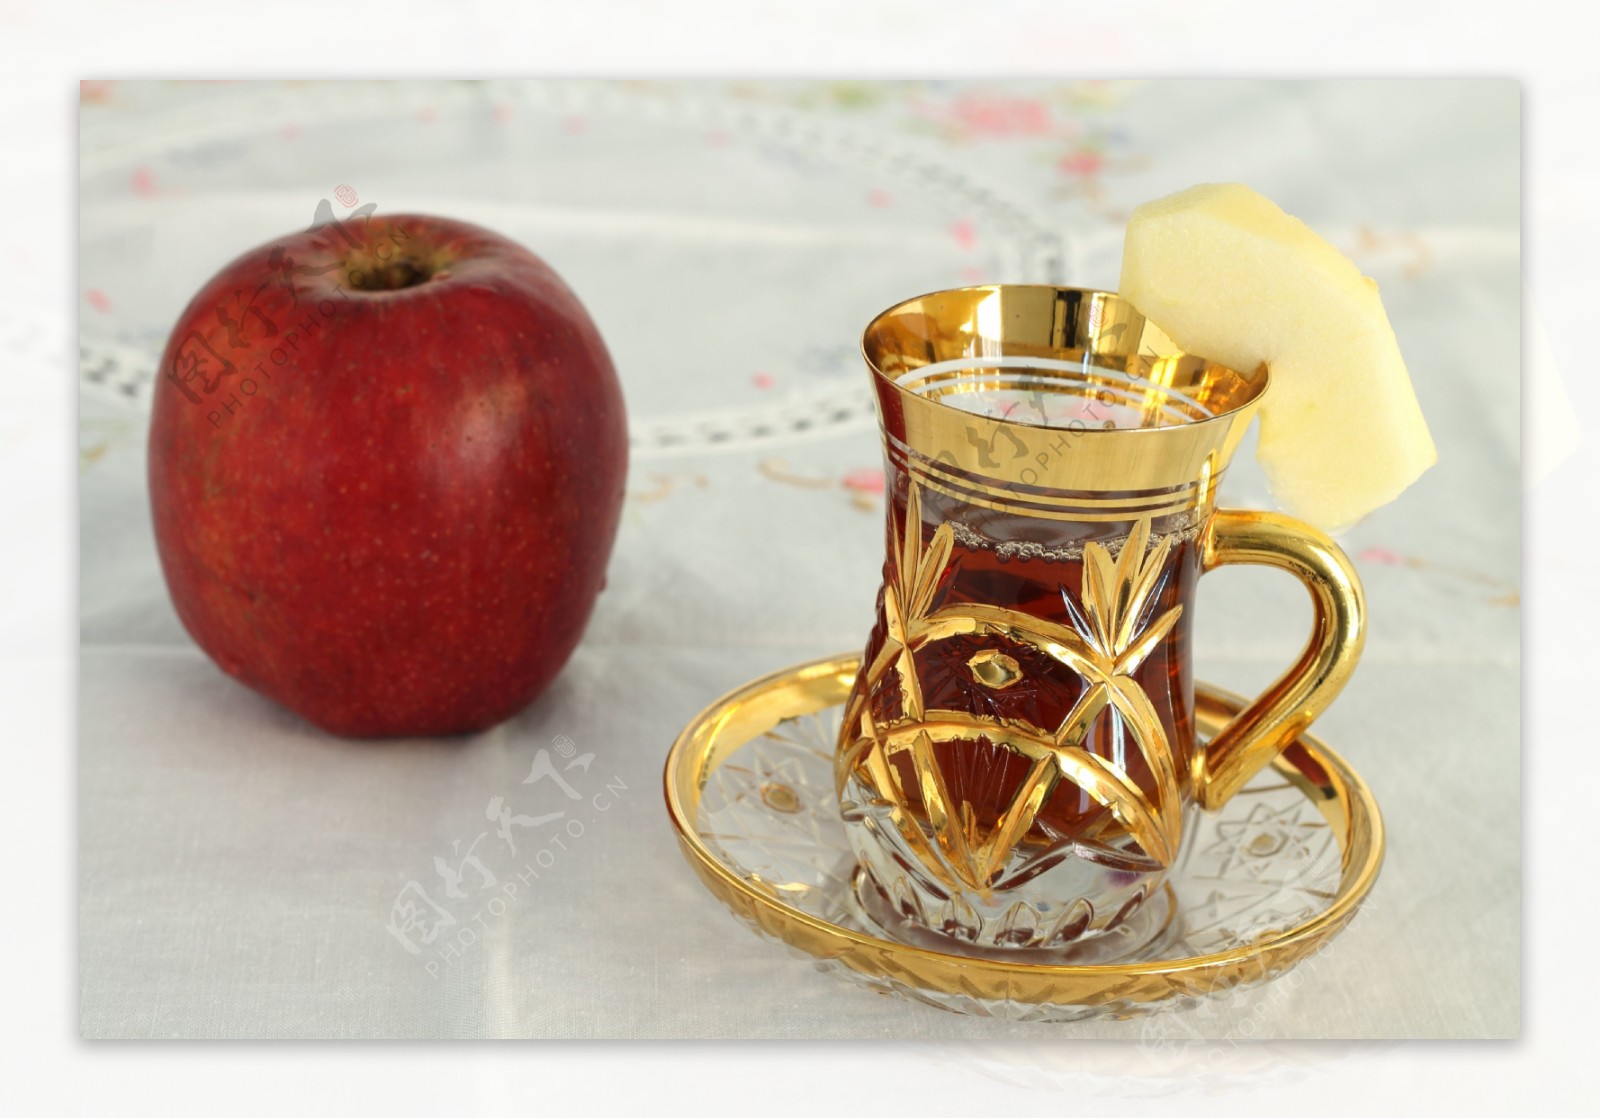 苹果与土耳其茶图片